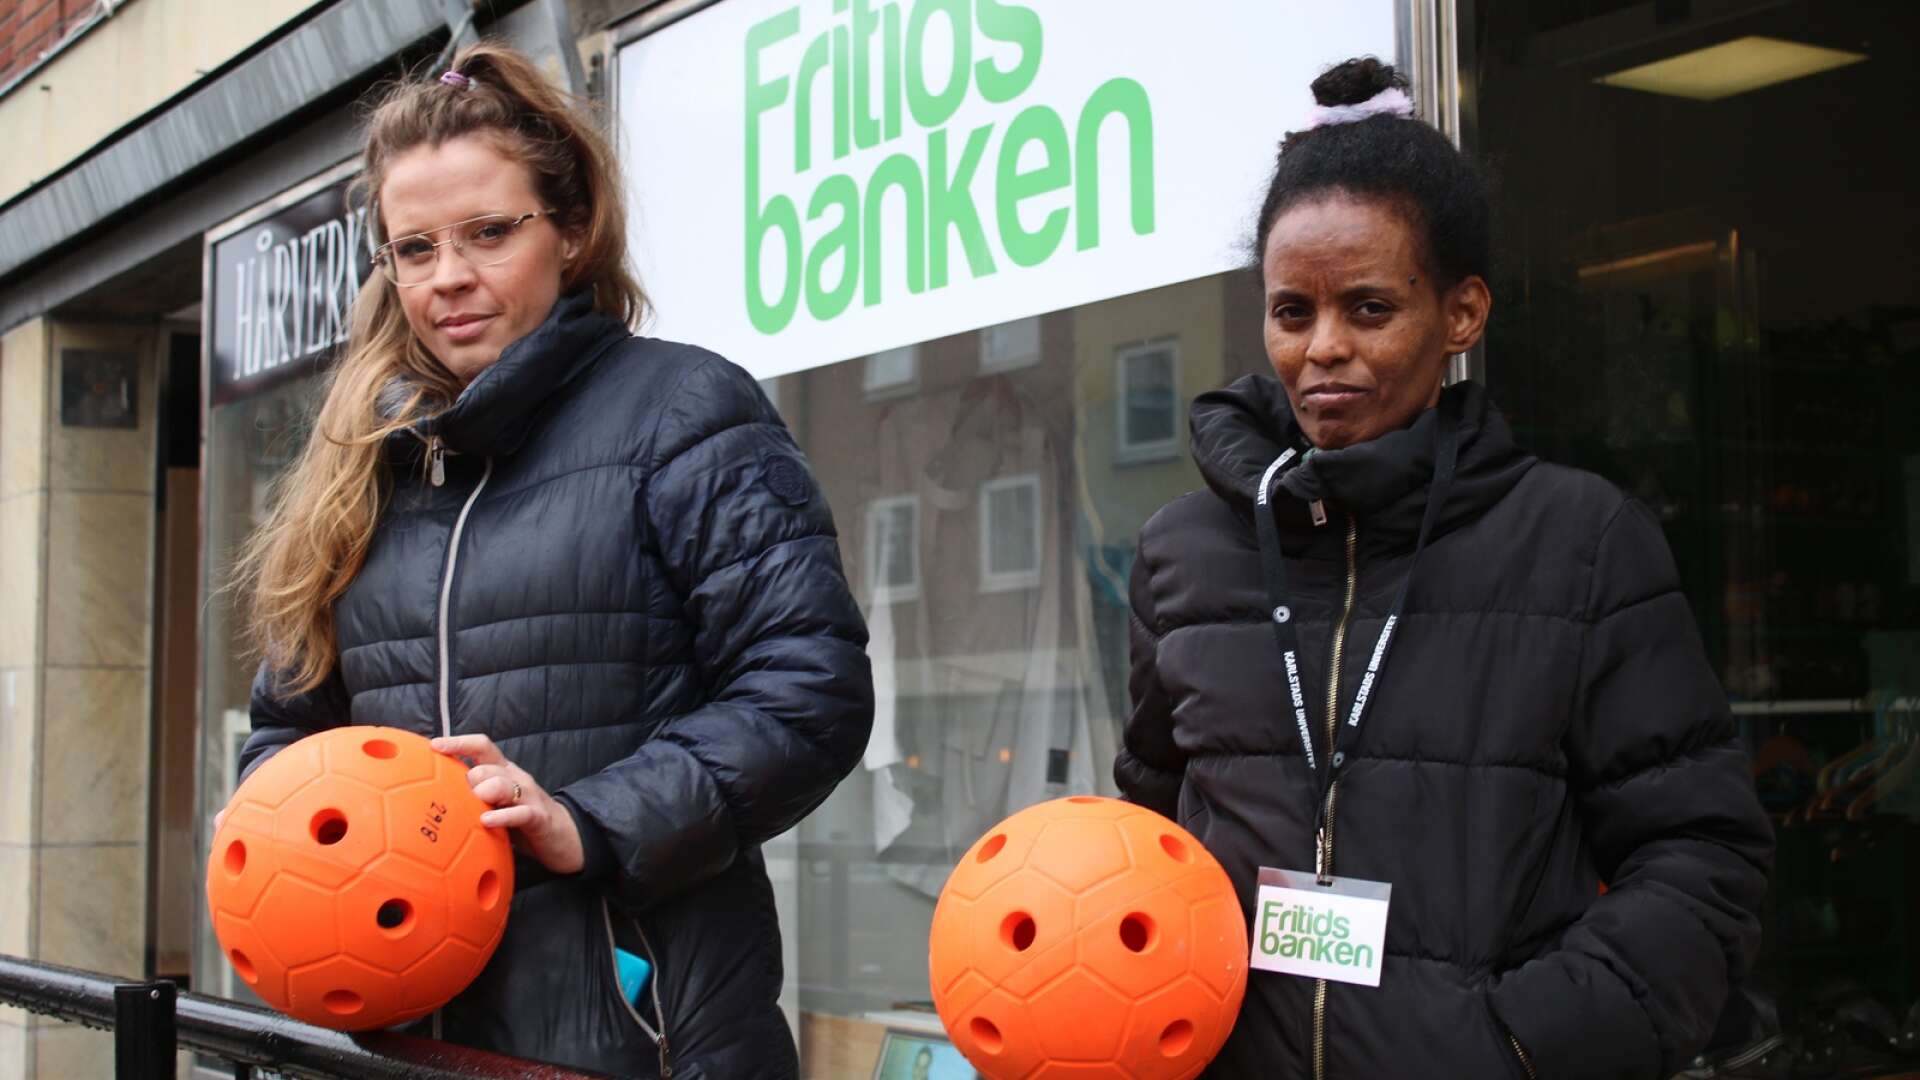 Från vänster: My Andersson, som arbetar på kommunens socialförvaltning samt Nebiat Berhe, som arbetar på Fritidsfabriken. I händerna har de en Goalball - en parasport utvecklad för synskadade.